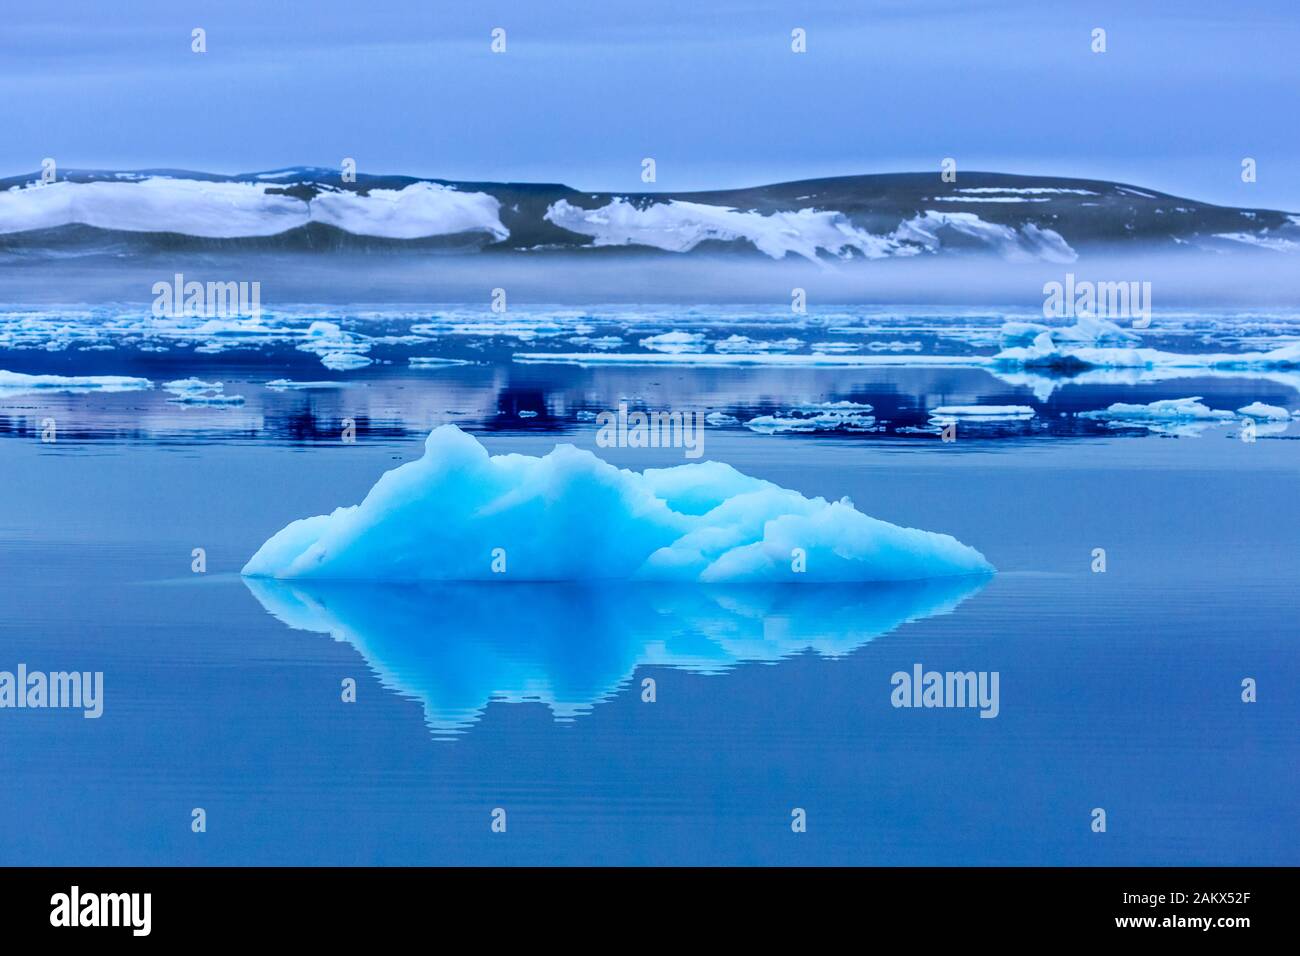 Ice floe in the Hinlopenstretet / Hinlopenstreet / Hinlopen strait between Spitsbergen and Nordaustlandet in Svalbard, Norway Stock Photo